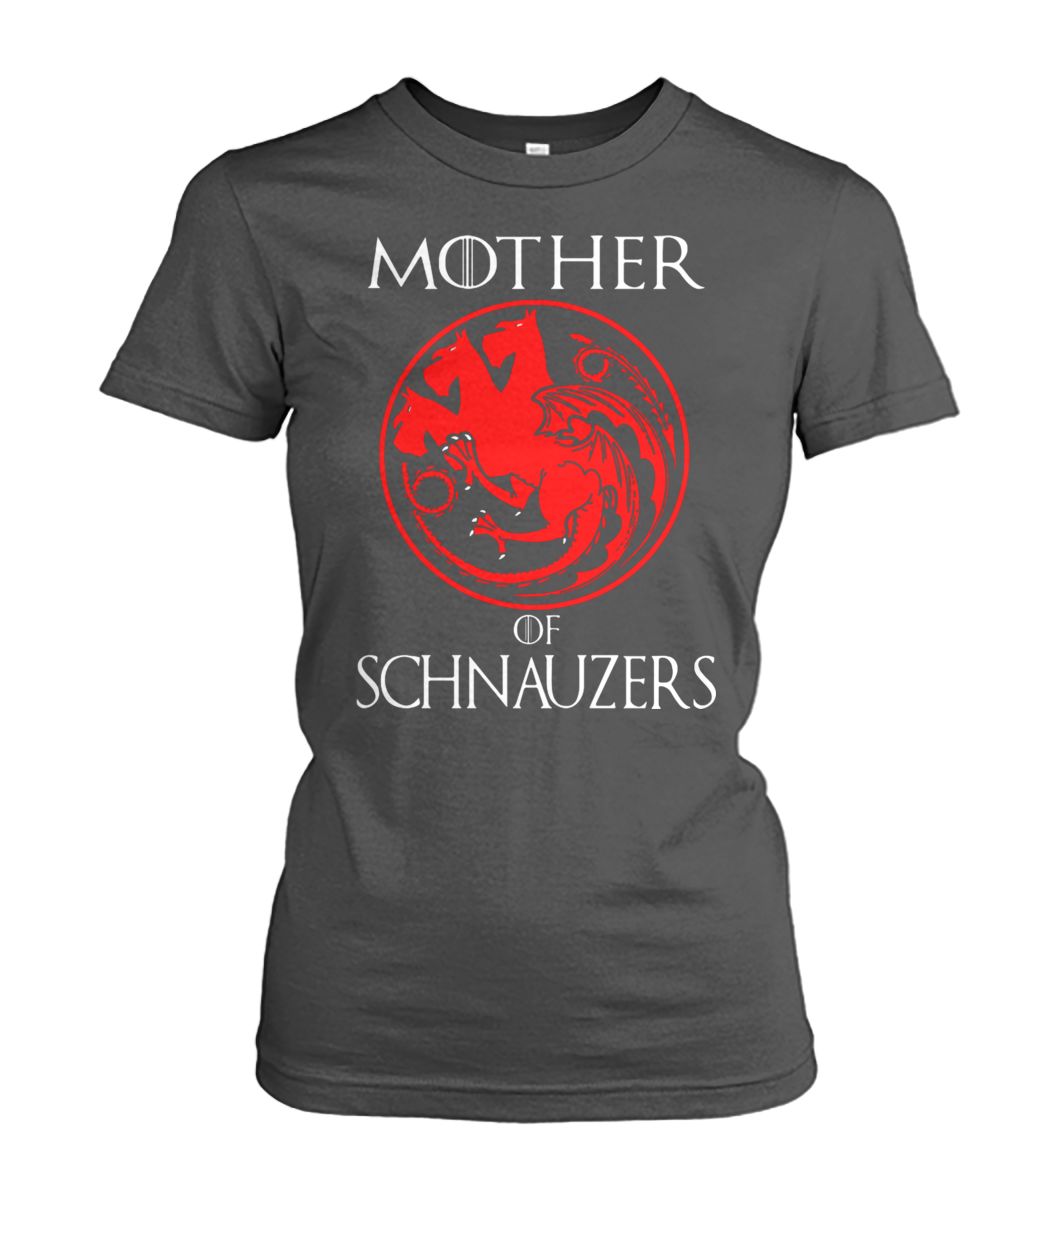 Game of thrones mother of schnauzers women's crew tee